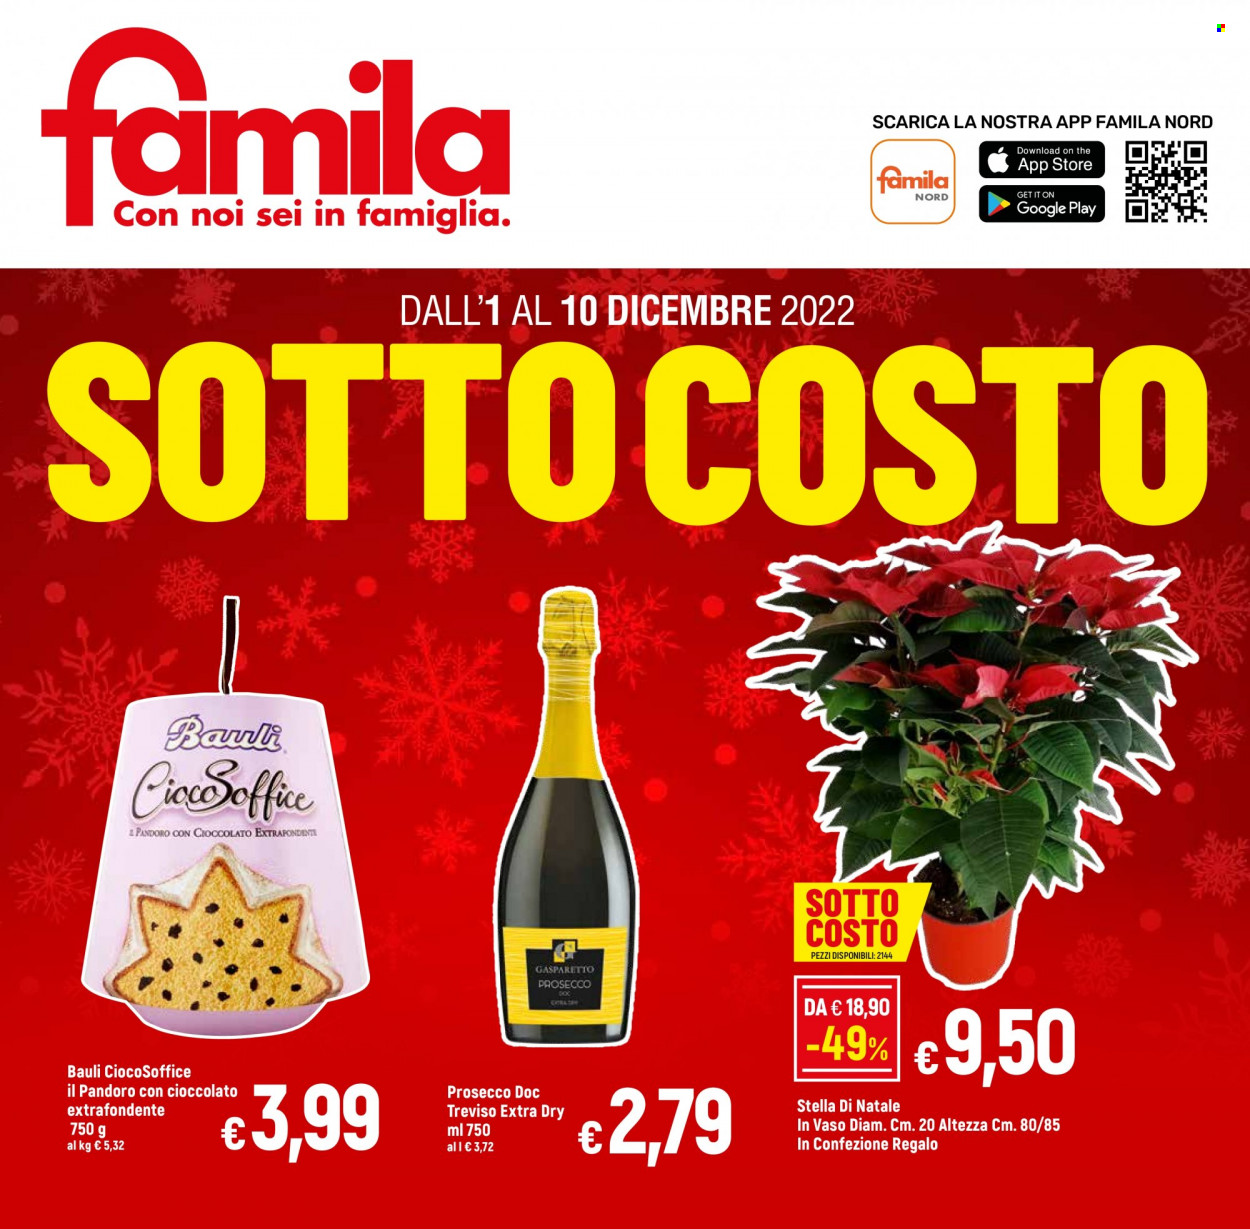 thumbnail - Volantino Famila - 1/12/2022 - 10/12/2022 - Prodotti in offerta - Bauli, pandoro, Prosecco, confezione regalo, stella di natale. Pagina 1.